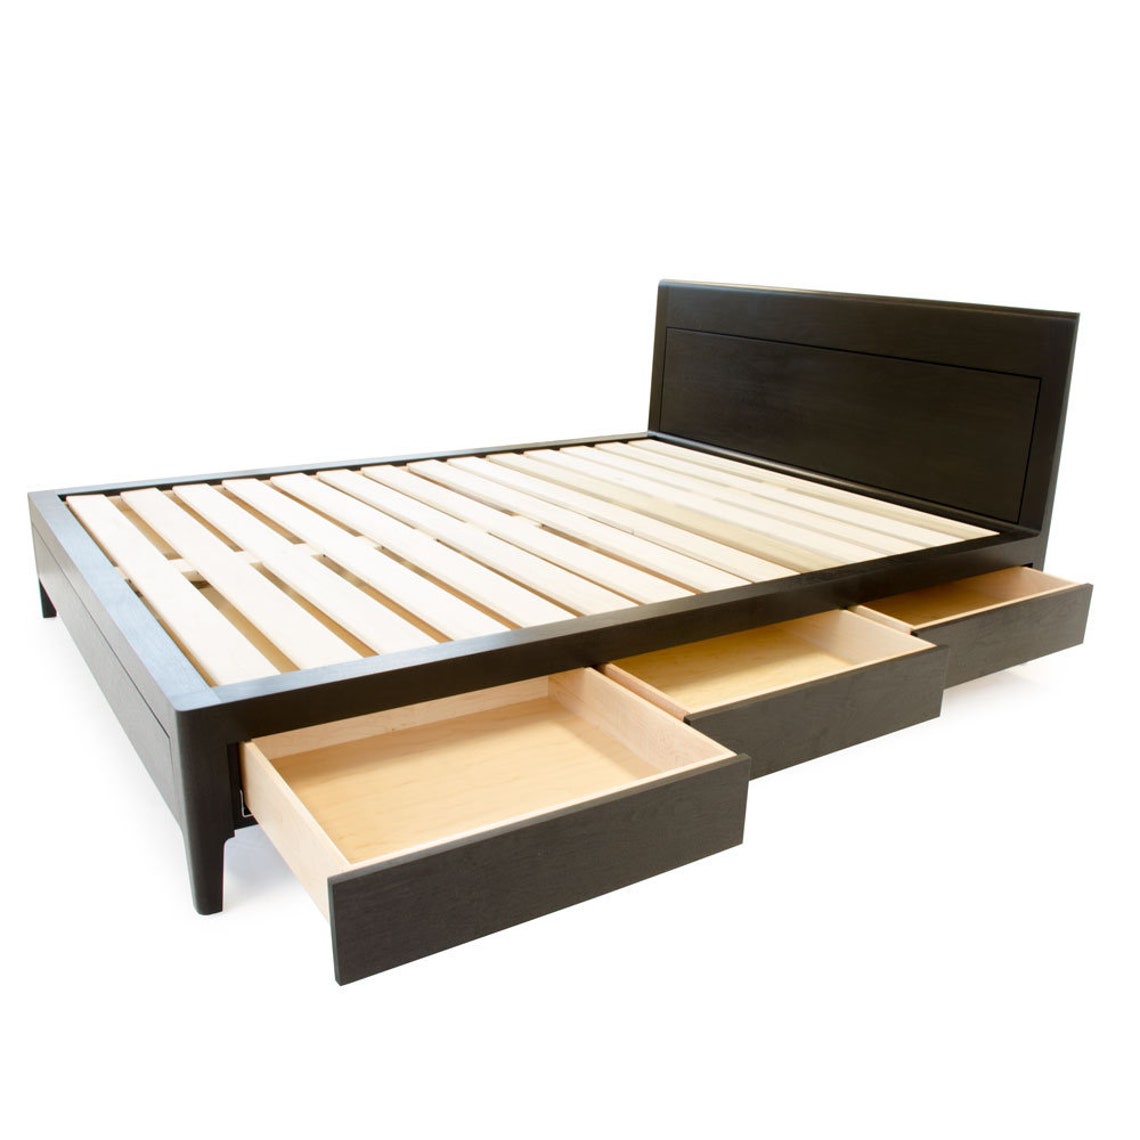 Storage Bed Plans King Size Platform Bed No. 2 Measured | Etsy